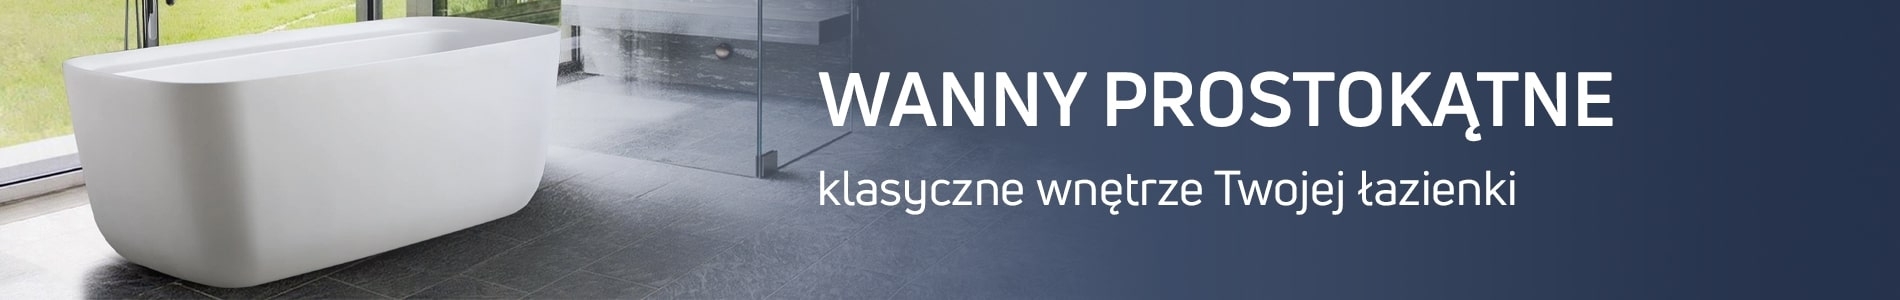 Wanny prostokątne w sklepie Massi.pl